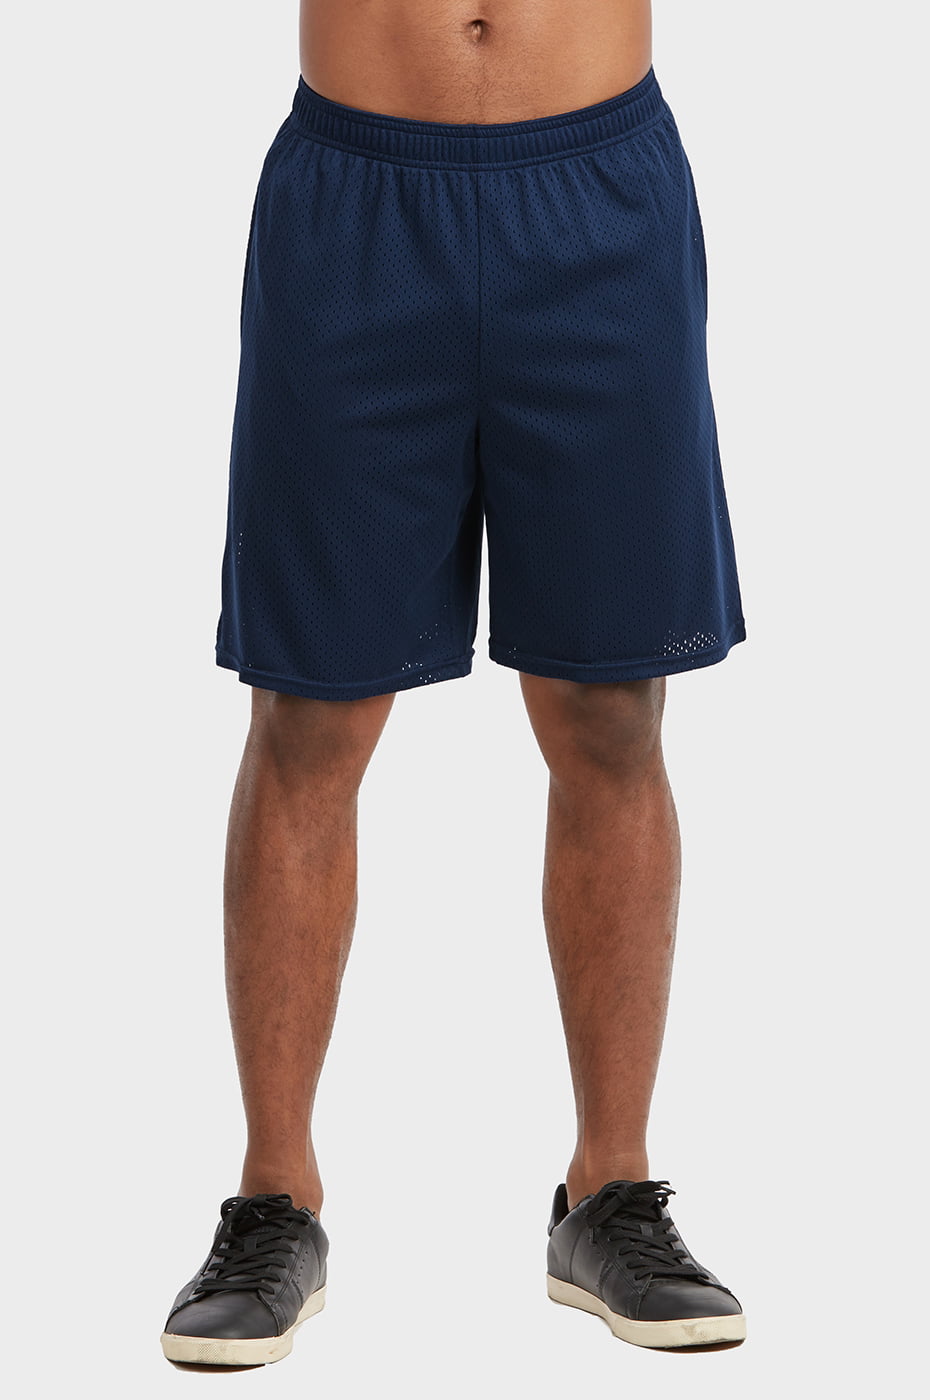 Blended - Men's Plain Mesh Basketball Shorts w/Pockets Elastic